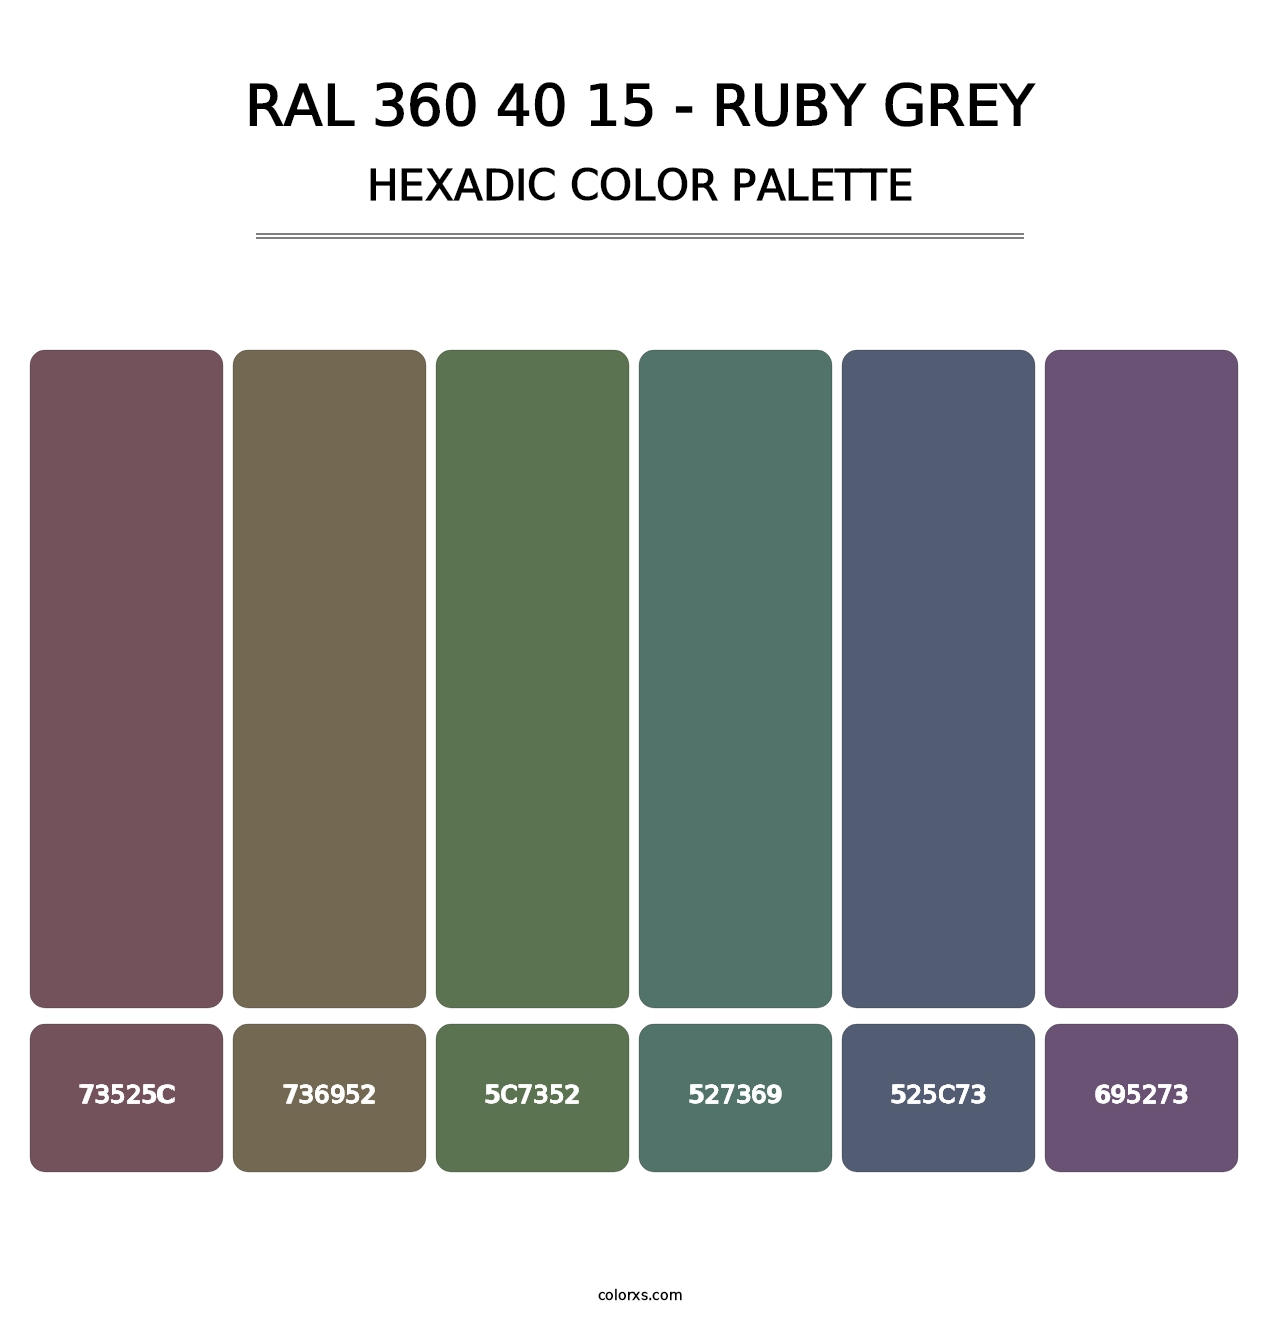 RAL 360 40 15 - Ruby Grey - Hexadic Color Palette